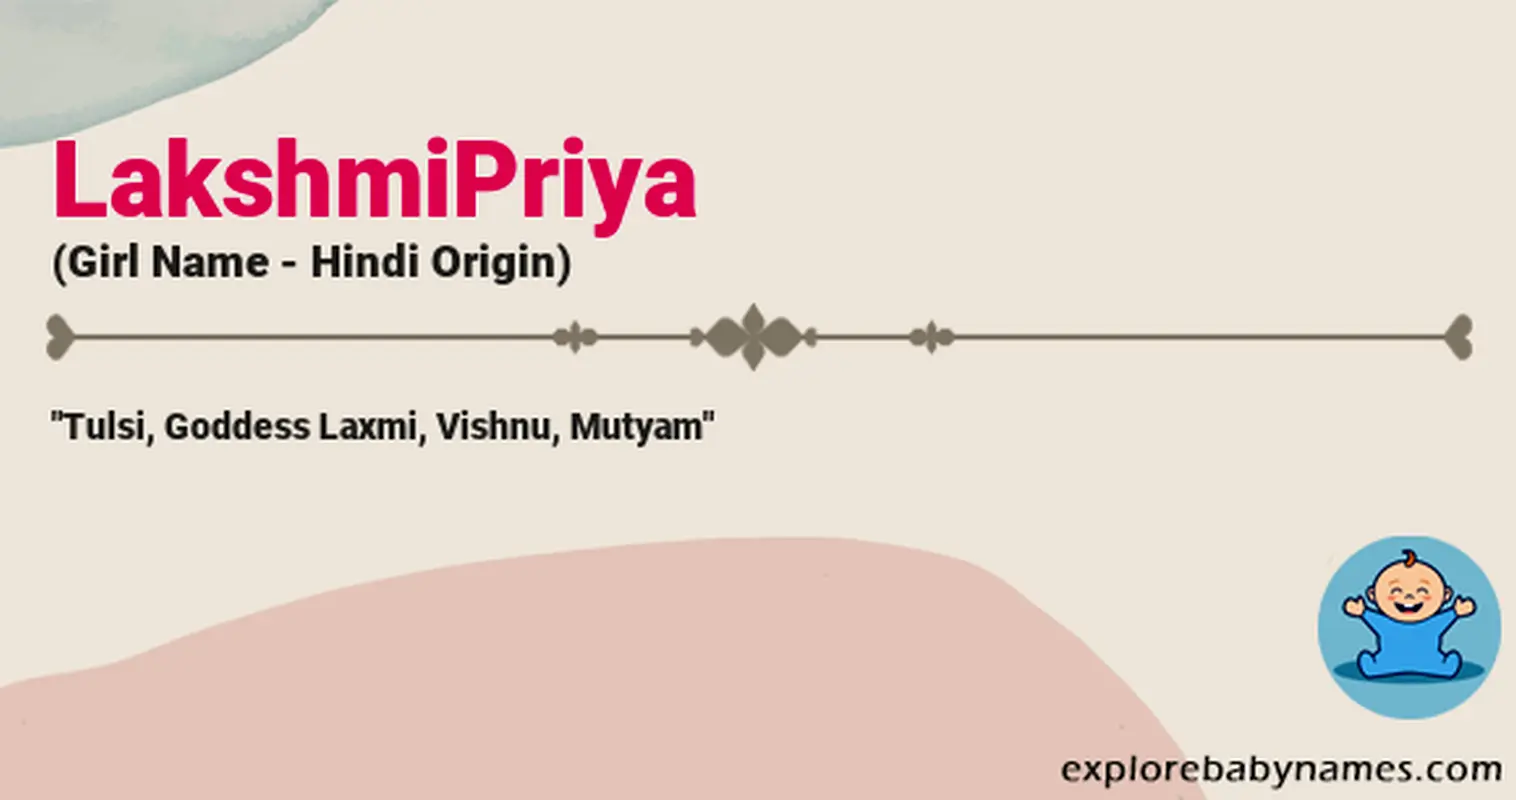 Meaning of LakshmiPriya